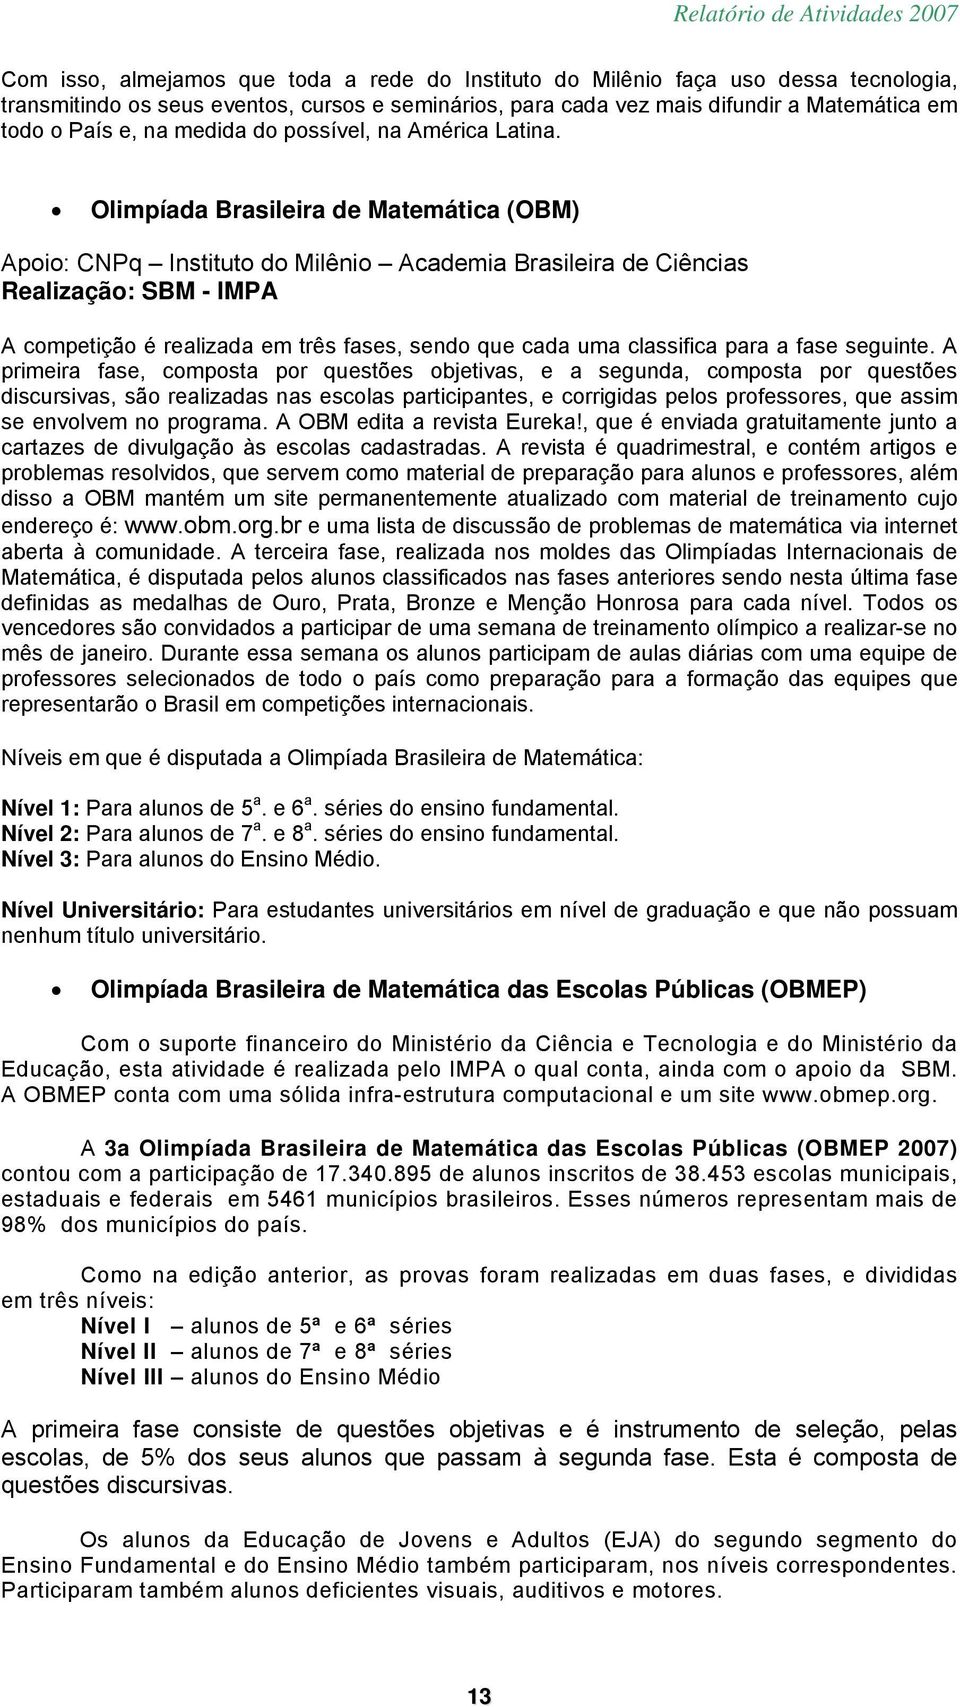 Olimpíada Brasileira de Matemática (OBM) Apoio: CNPq Instituto do Milênio Academia Brasileira de Ciências Realização: SBM - A competição é realizada em três fases, sendo que cada uma classifica para